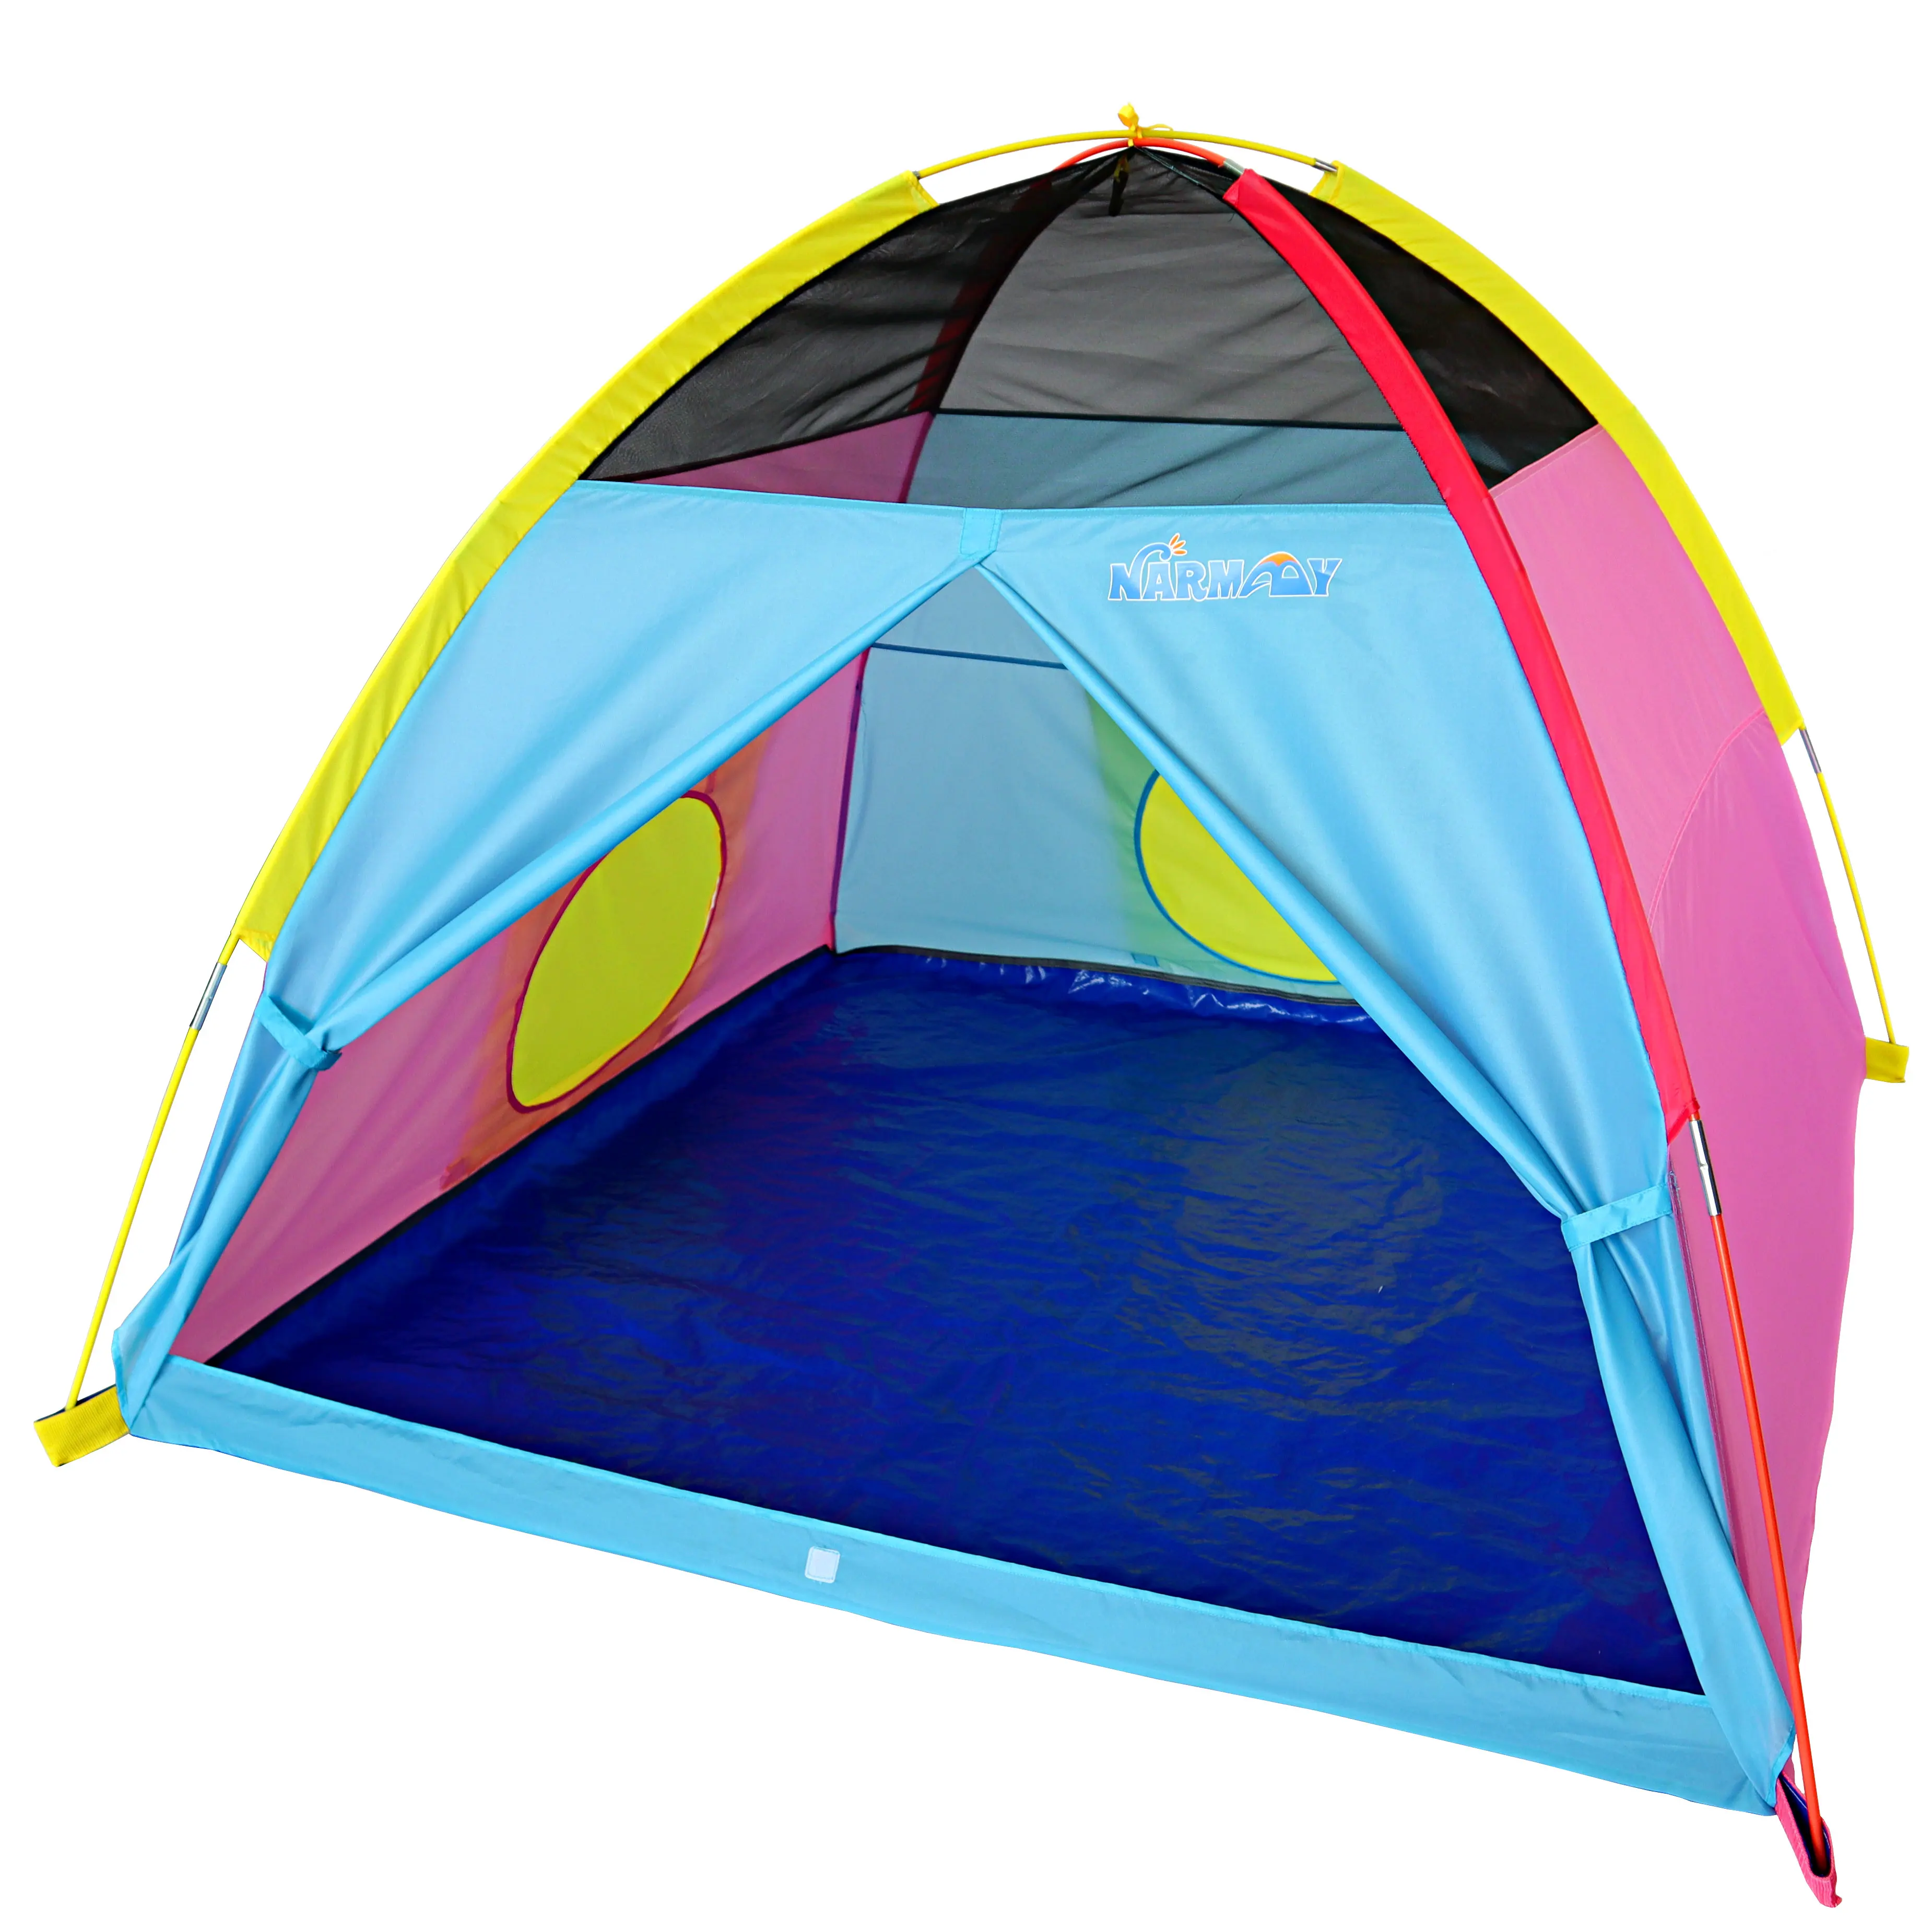 tenda-da-gioco-narmay-tenda-a-cupola-easy-joy-per-bambini-divertimento-indoor-outdoor-152x152x111-cm